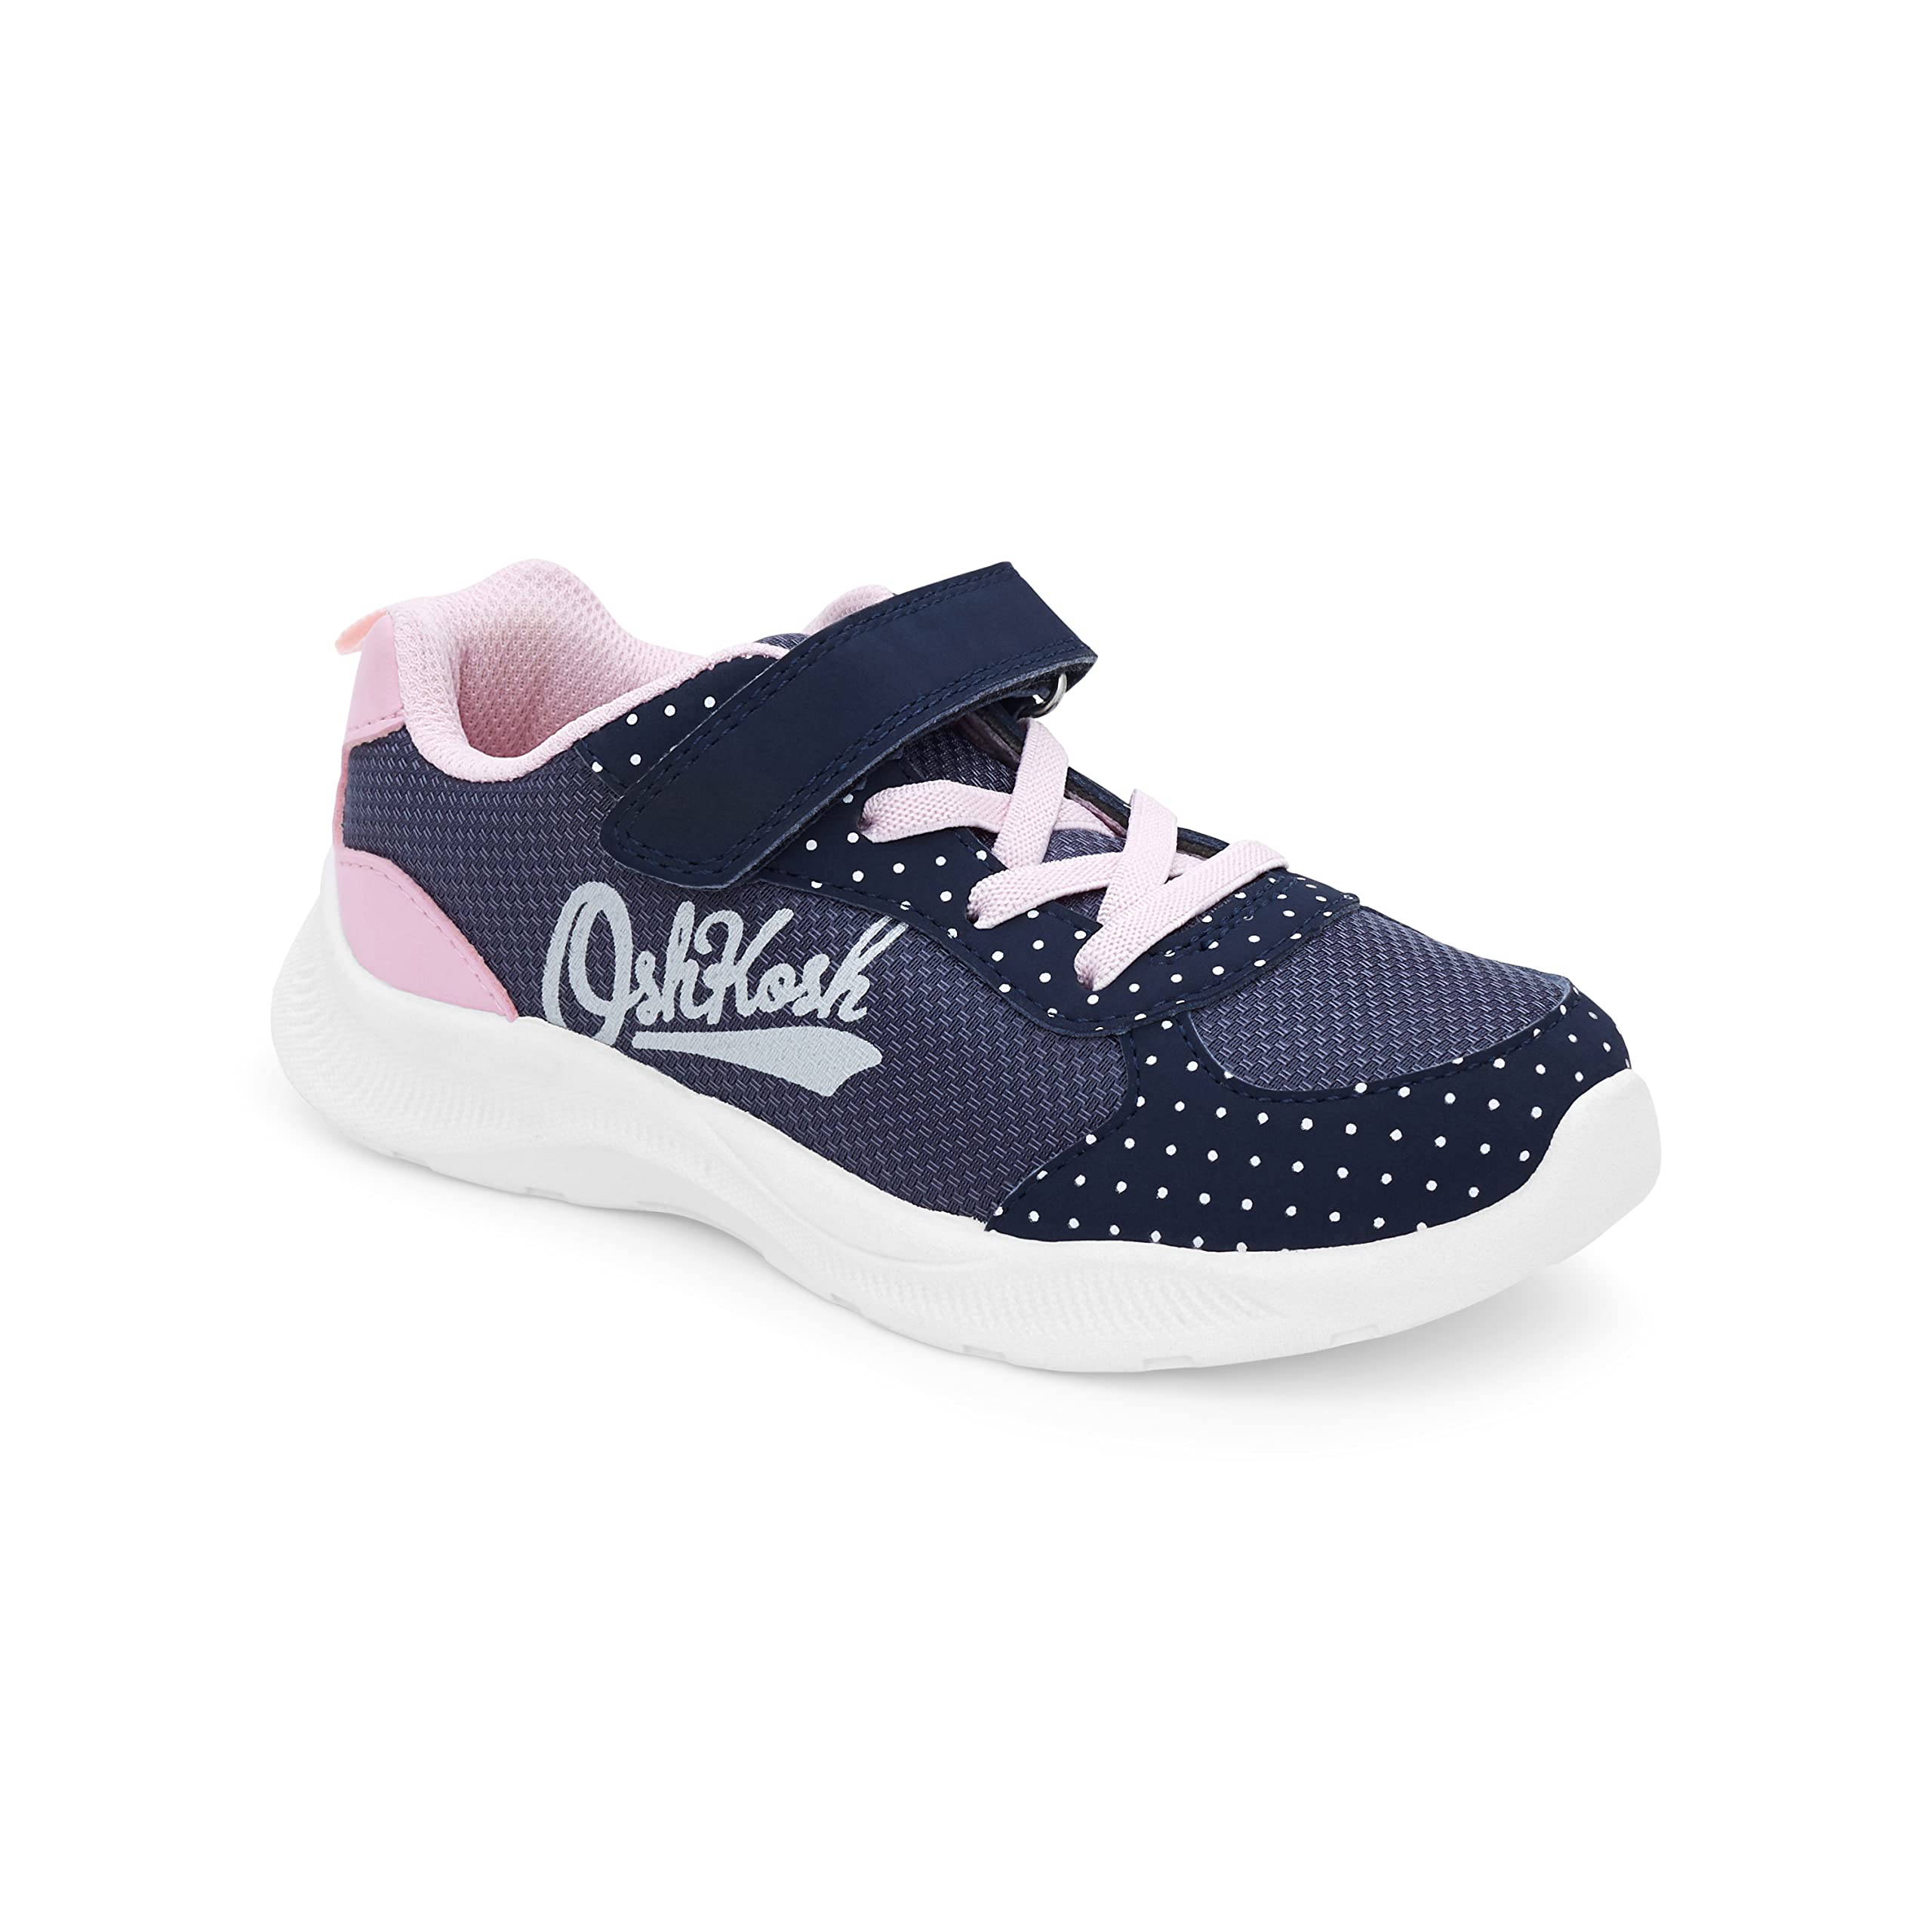 OshKosh B'Gosh Unisex-Child Retra Athletic Sneaker